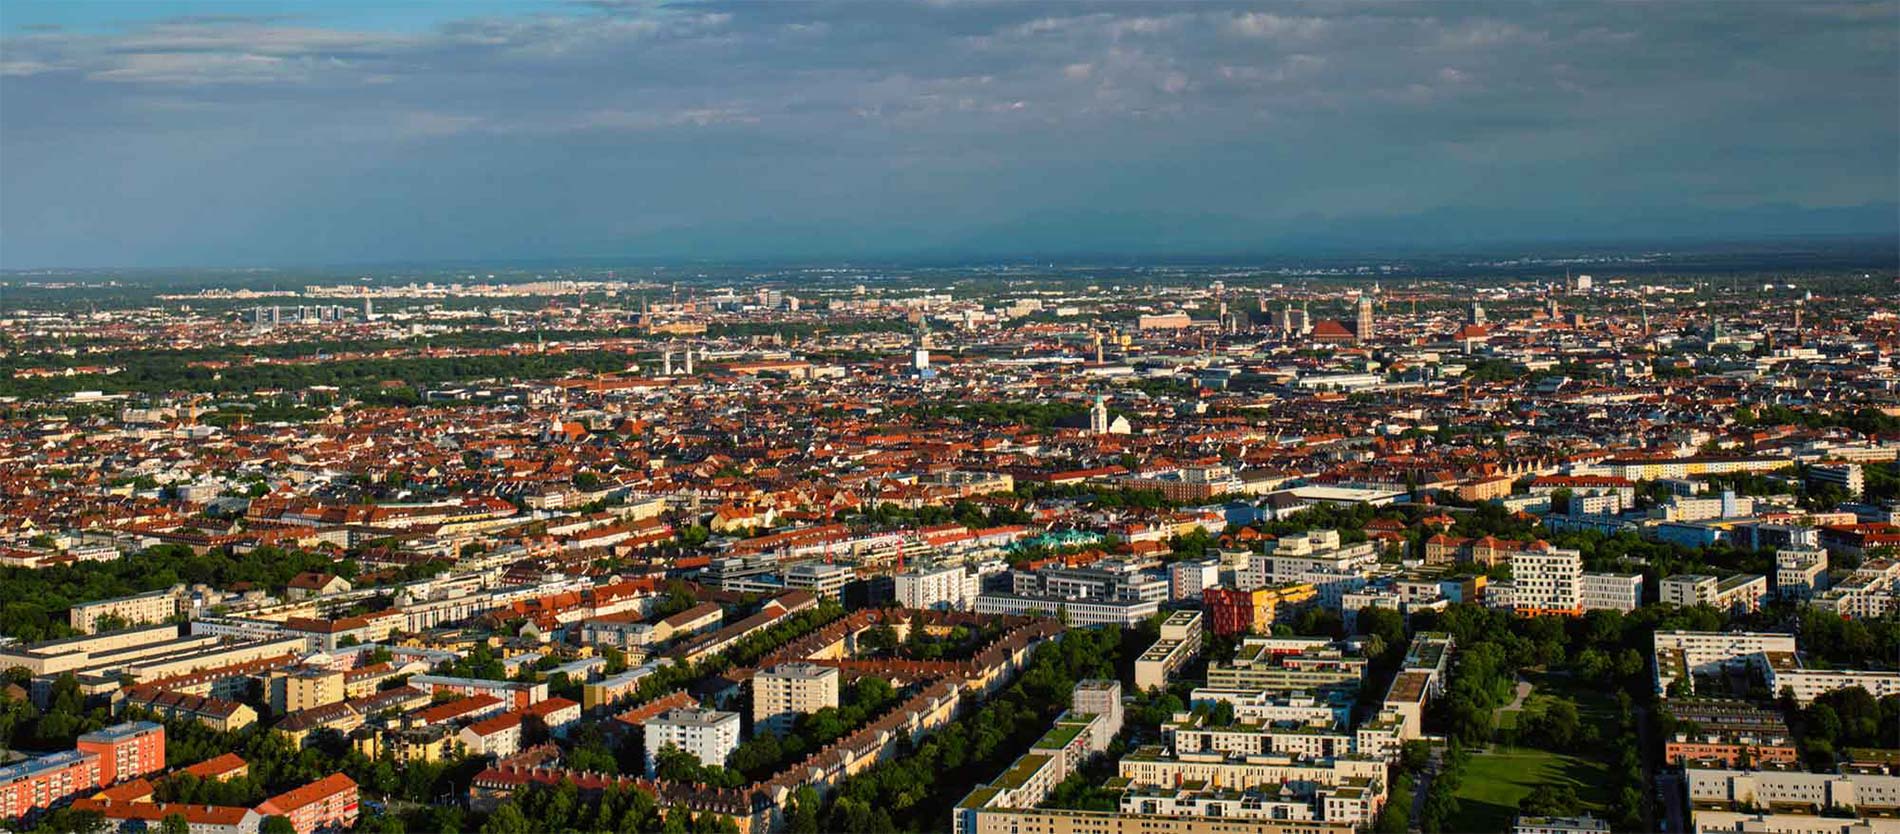 München von oben | Kapitalanlage Immobilien München - Lohnt sich ein Invest?